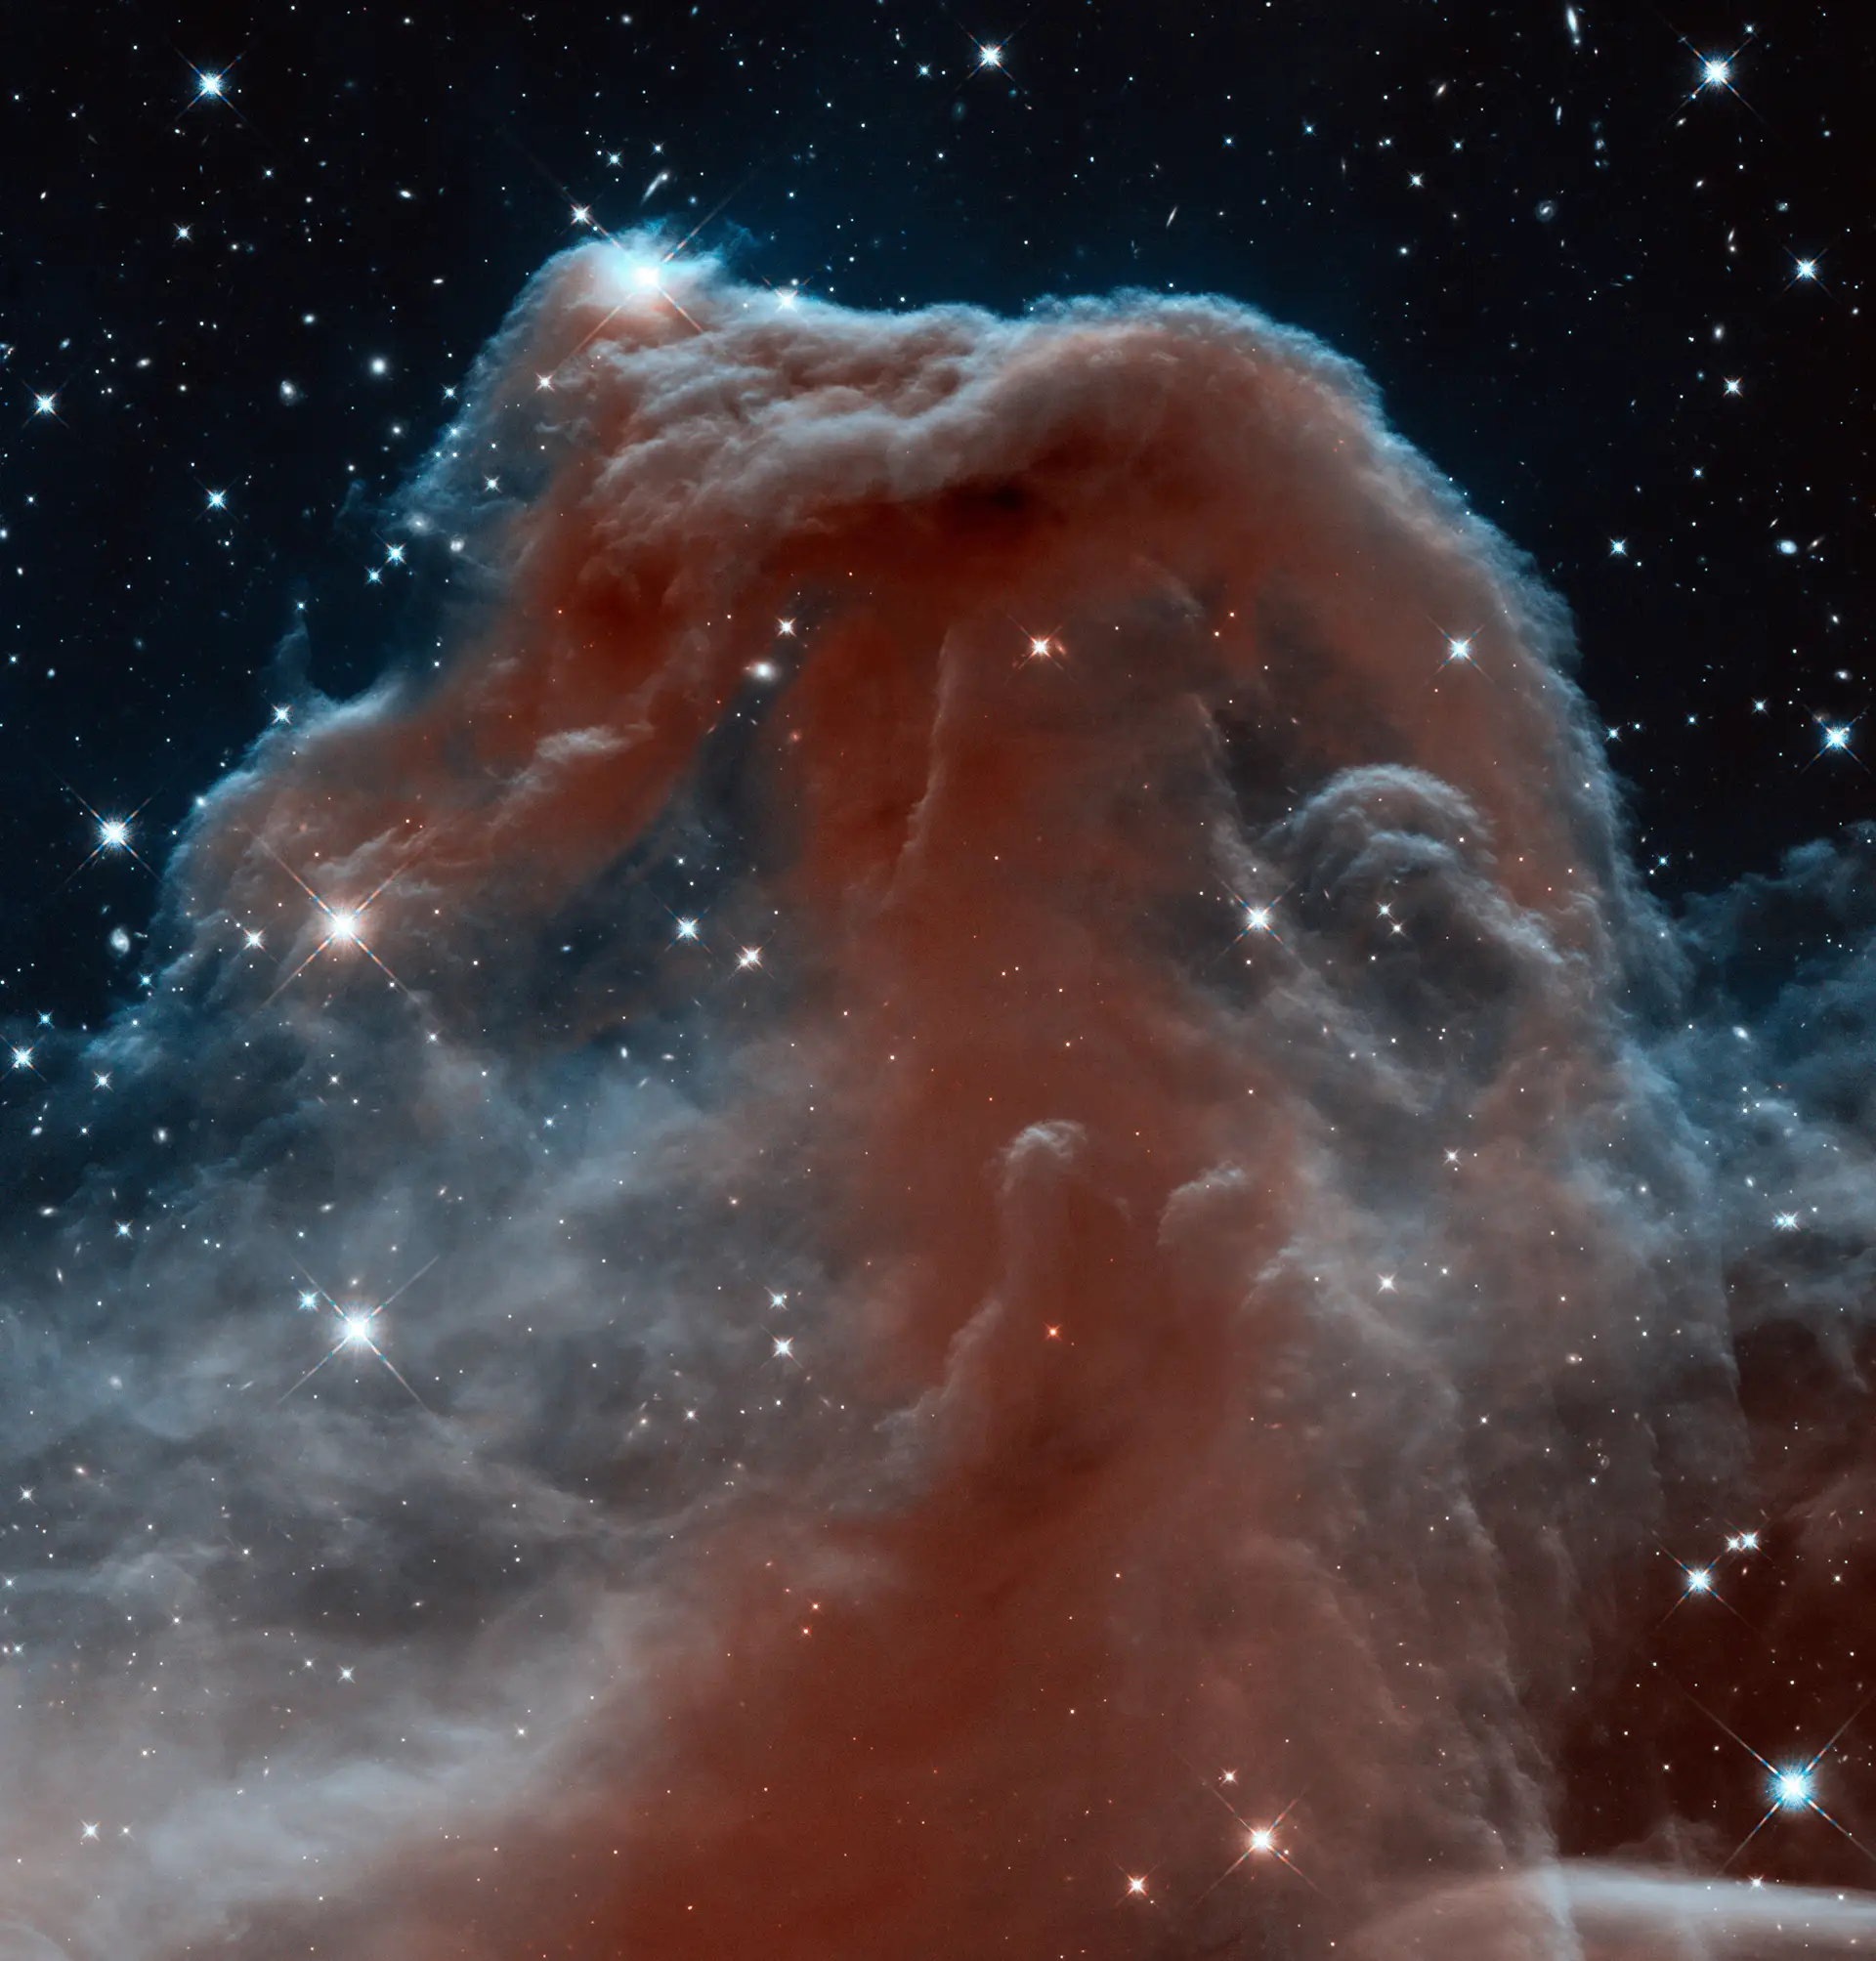 Imagens da nebulosa "Cabeça de Cavalo" captadas com resolução sem precedentes